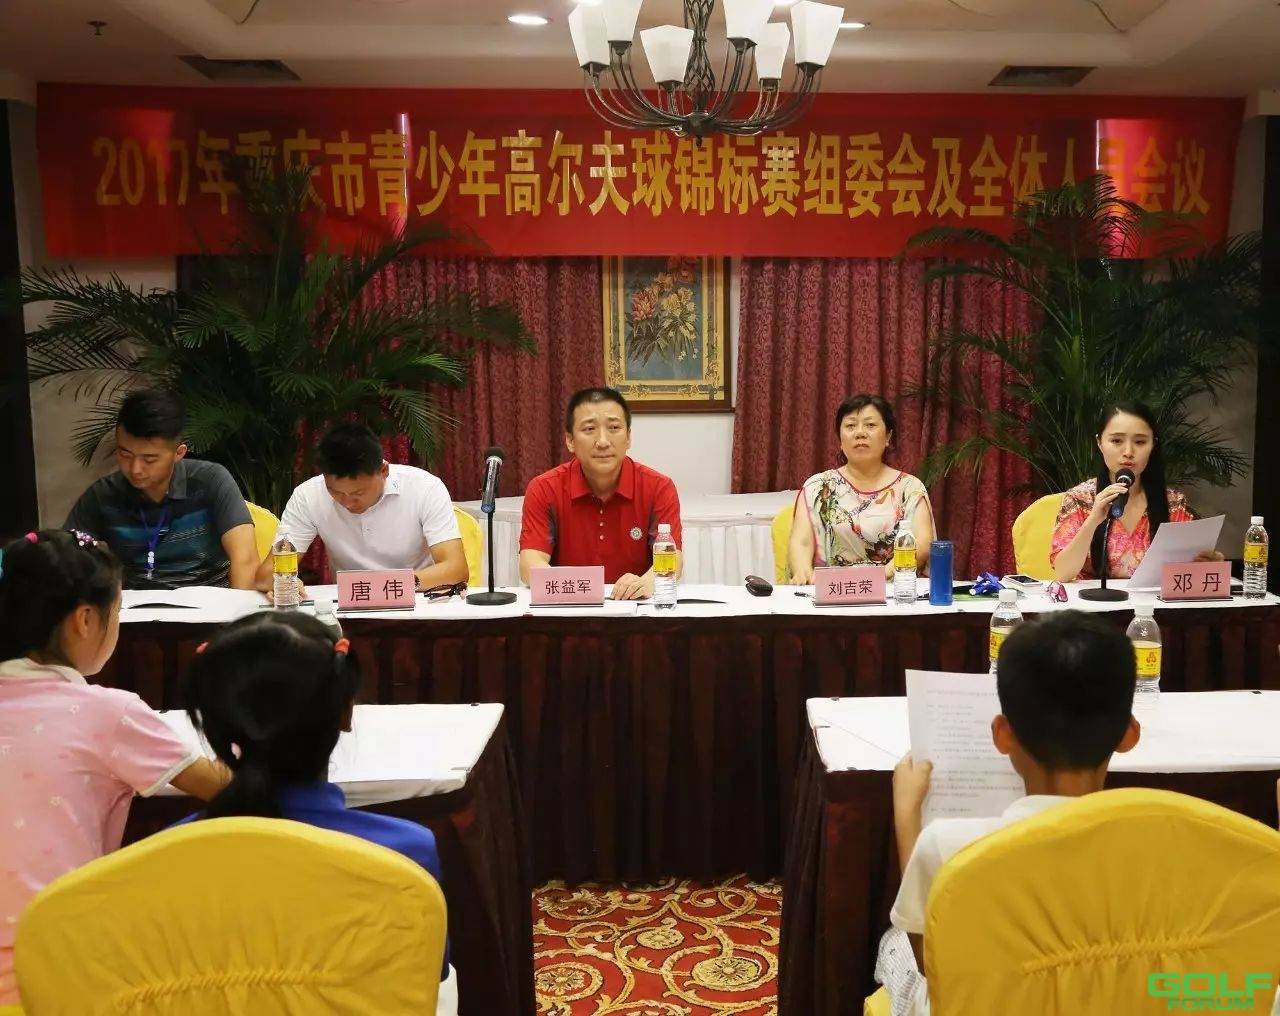 2017年重庆市青少年高尔夫球锦标赛正式开赛